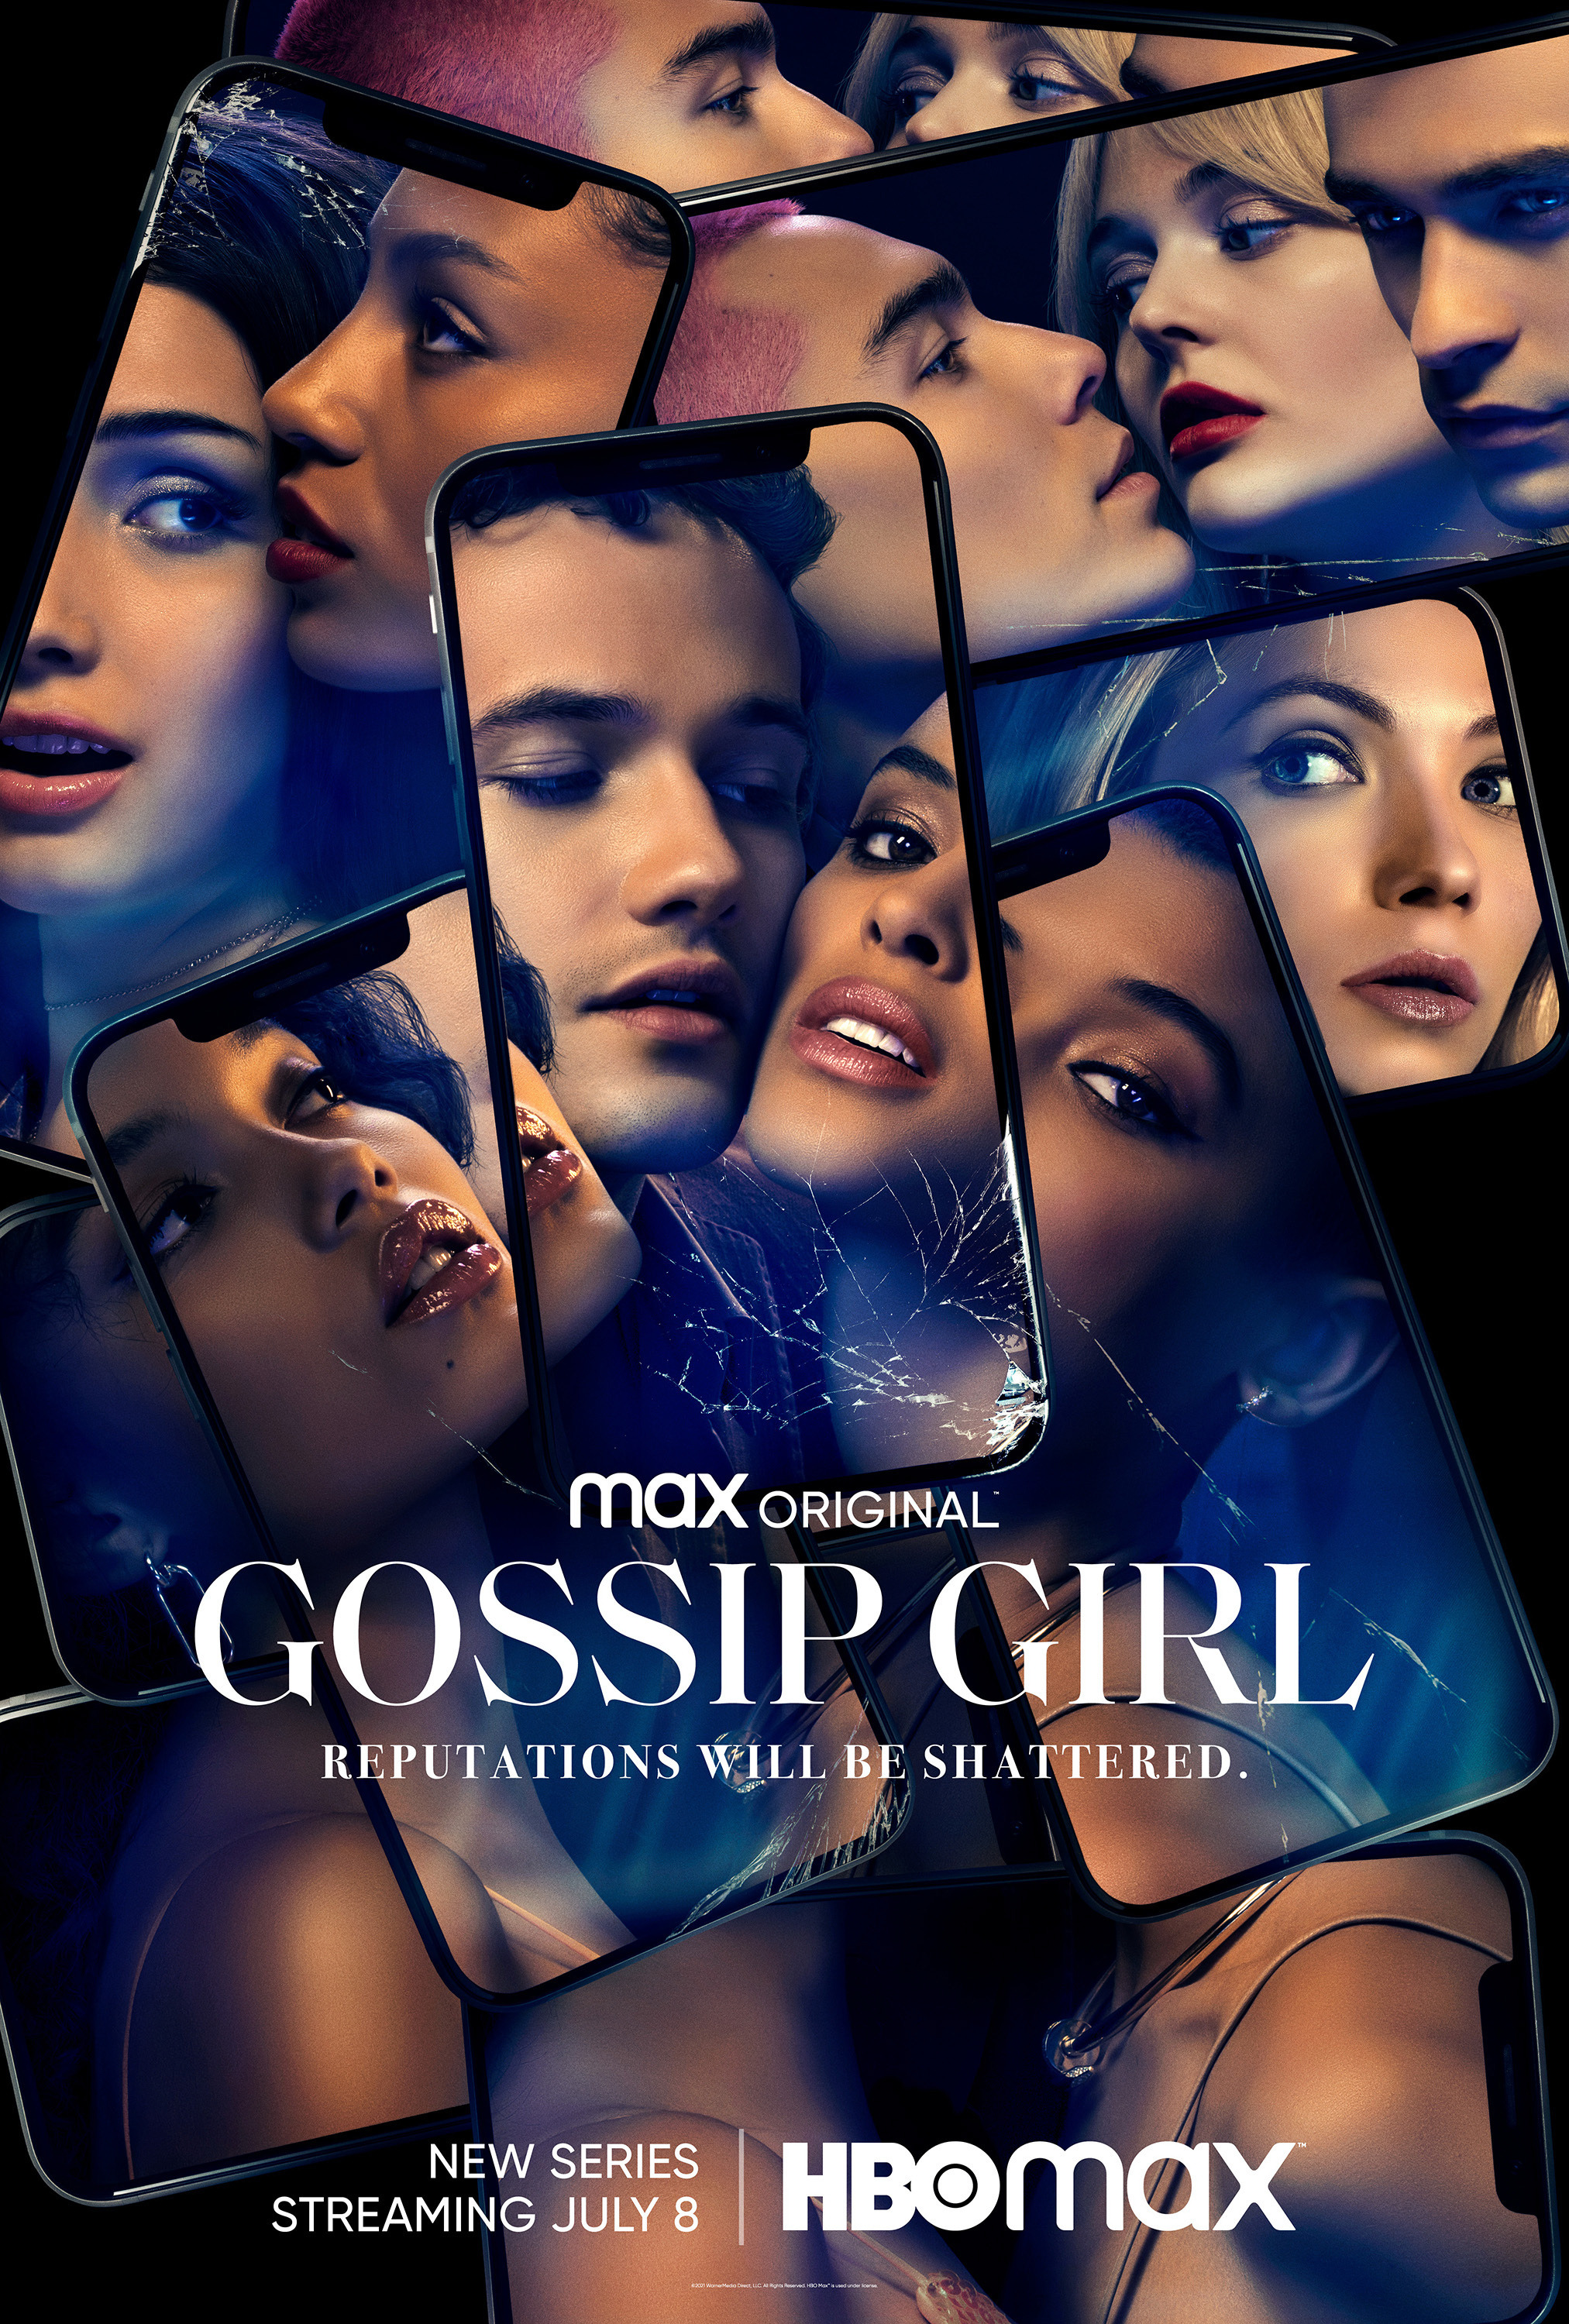 Mega Sized TV Poster Image for Gossip Girl (#10 of 23)